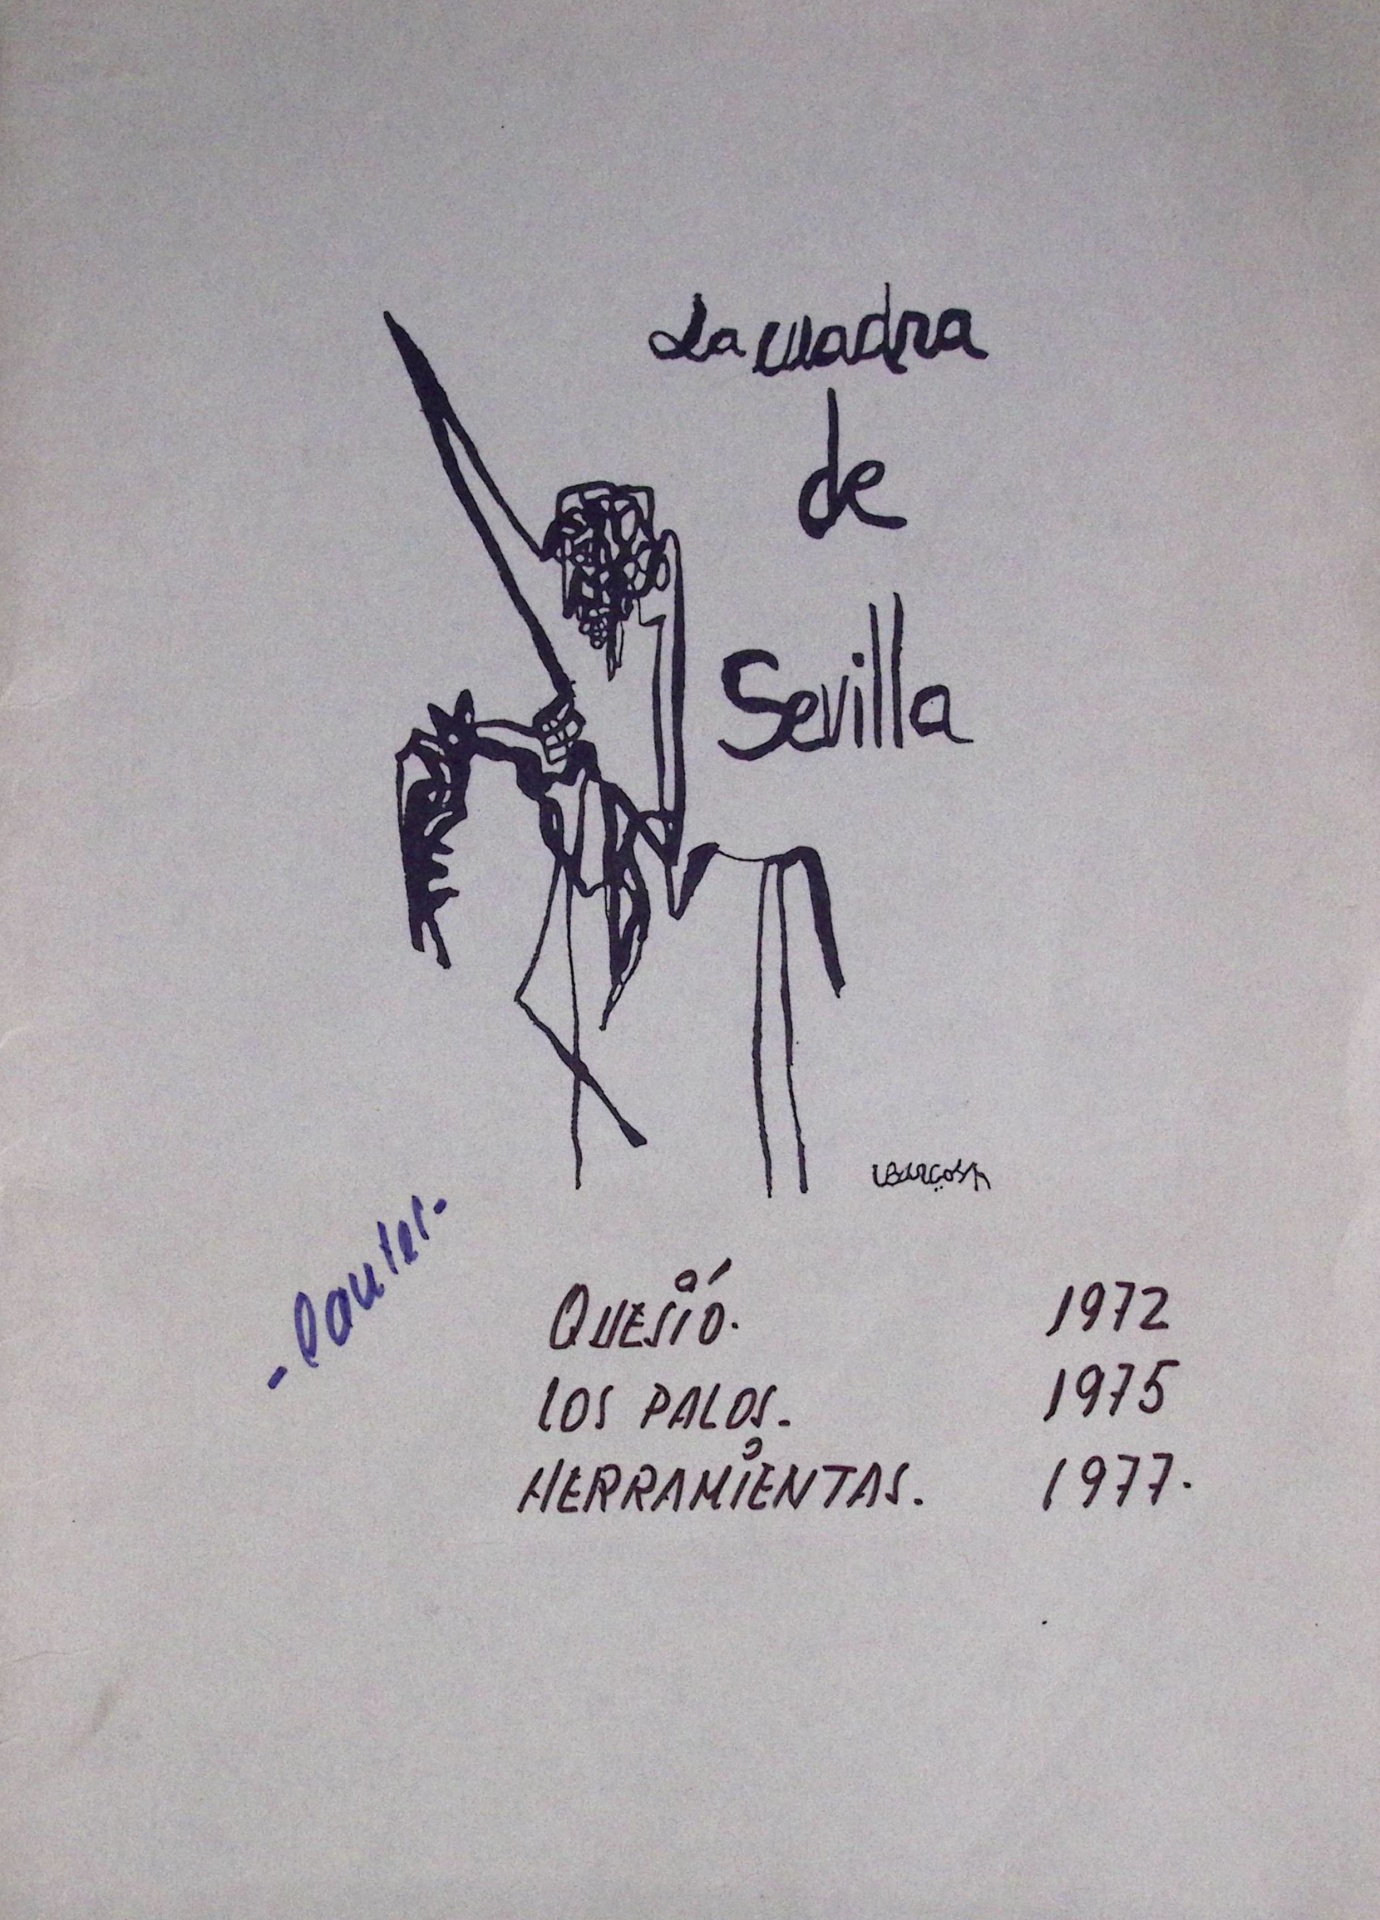 Cantes. Quejío 1972, Los palos 1975, Herramientas 1977. La Cuadra de Sevilla